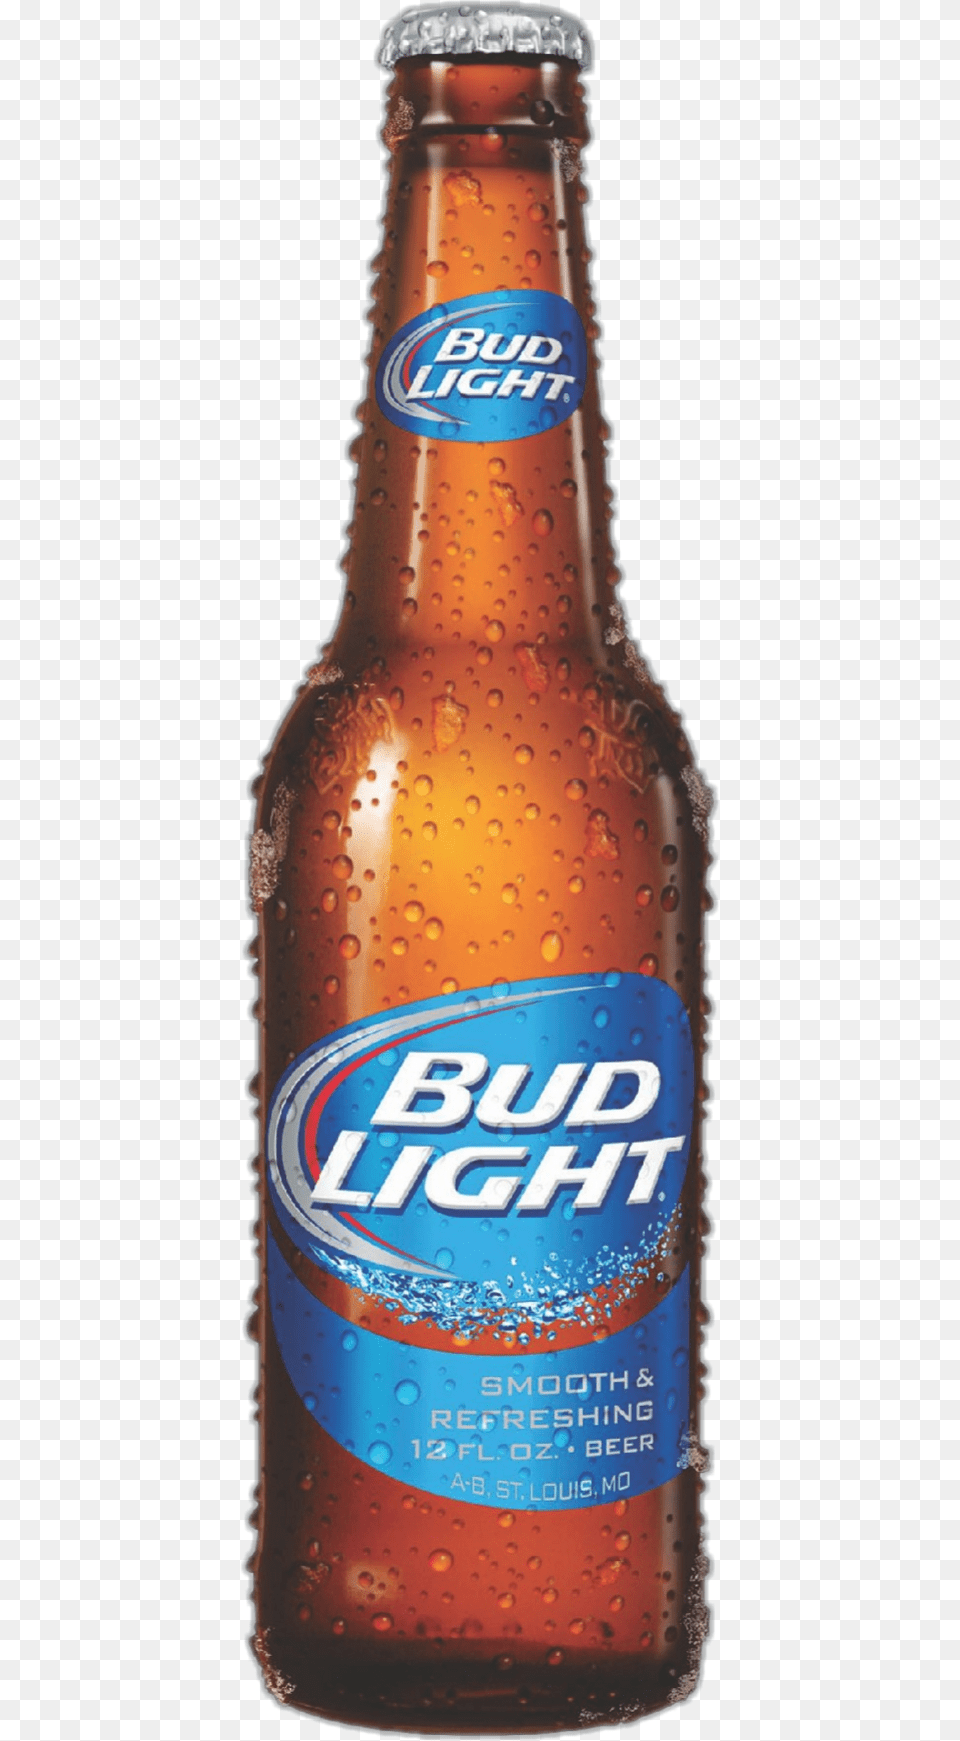 Bud Light 6pk12oz 12 Oz Bud Light Bottle, Alcohol, Beer, Beer Bottle, Beverage Png Image